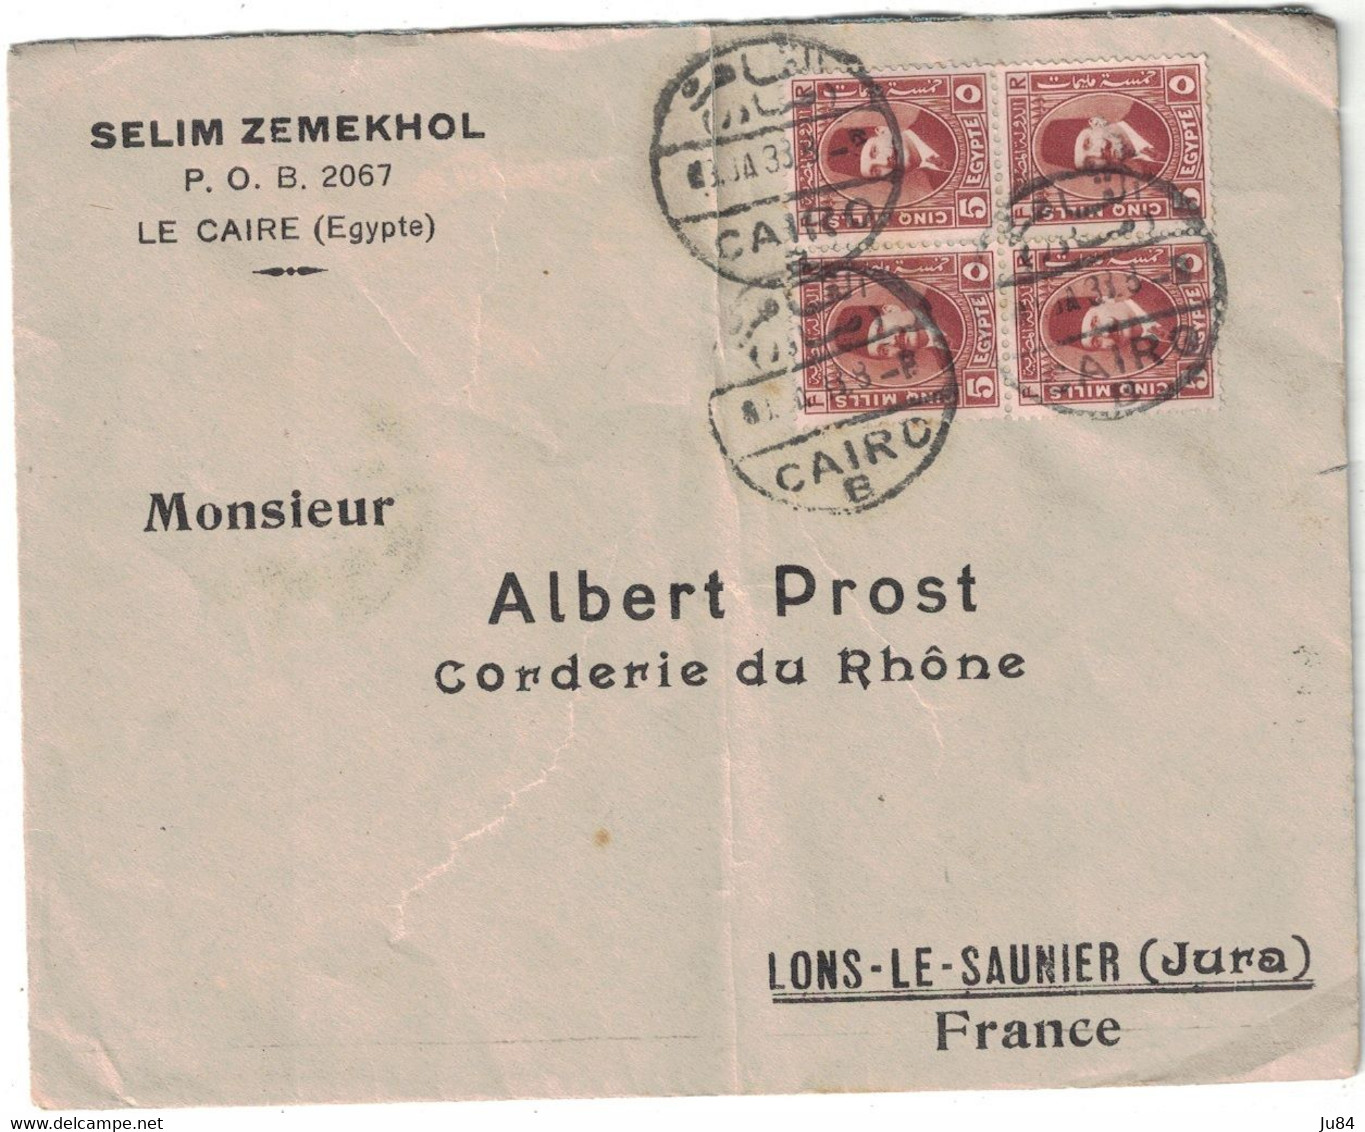 Egypte - Le Caire - Cairo - Entête Selim Zemekhol - Lettre Pour La France - Affranchissement Bloc De 4 - 1933 - Oblitérés